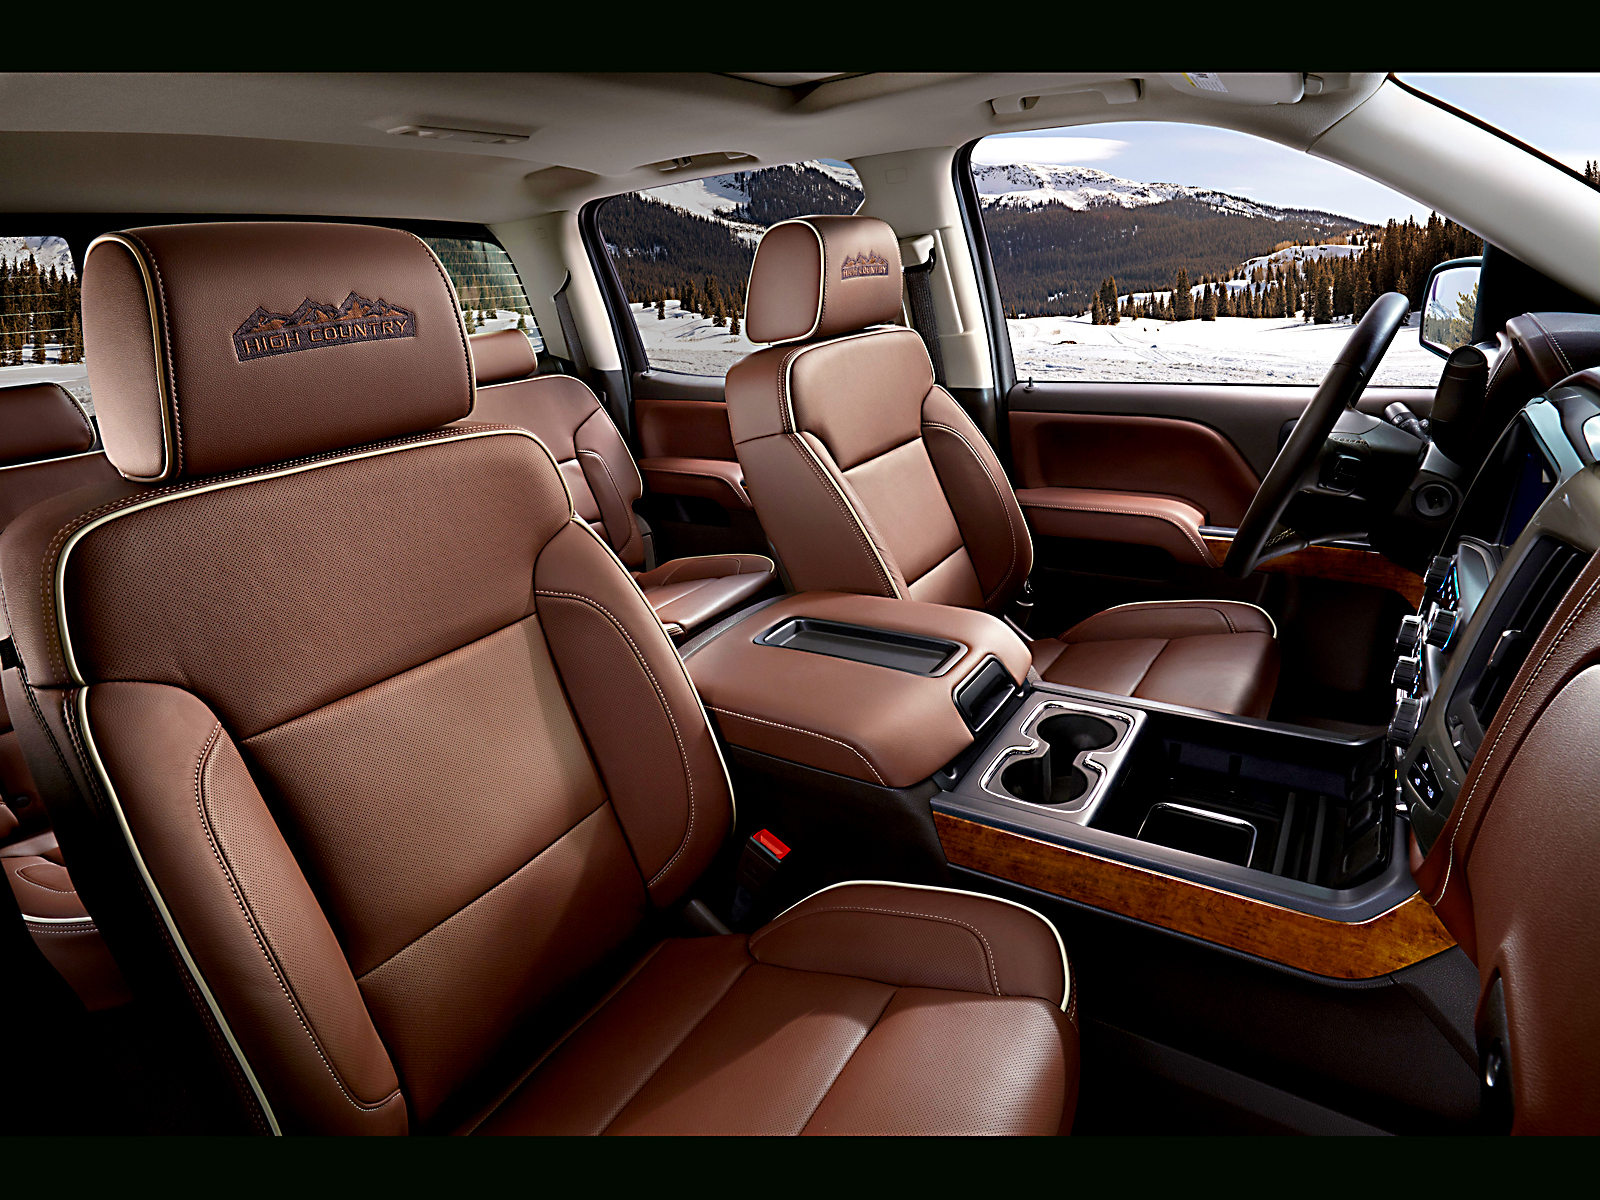 2014 Chevrolet Silverado High Country Interior Txgarage